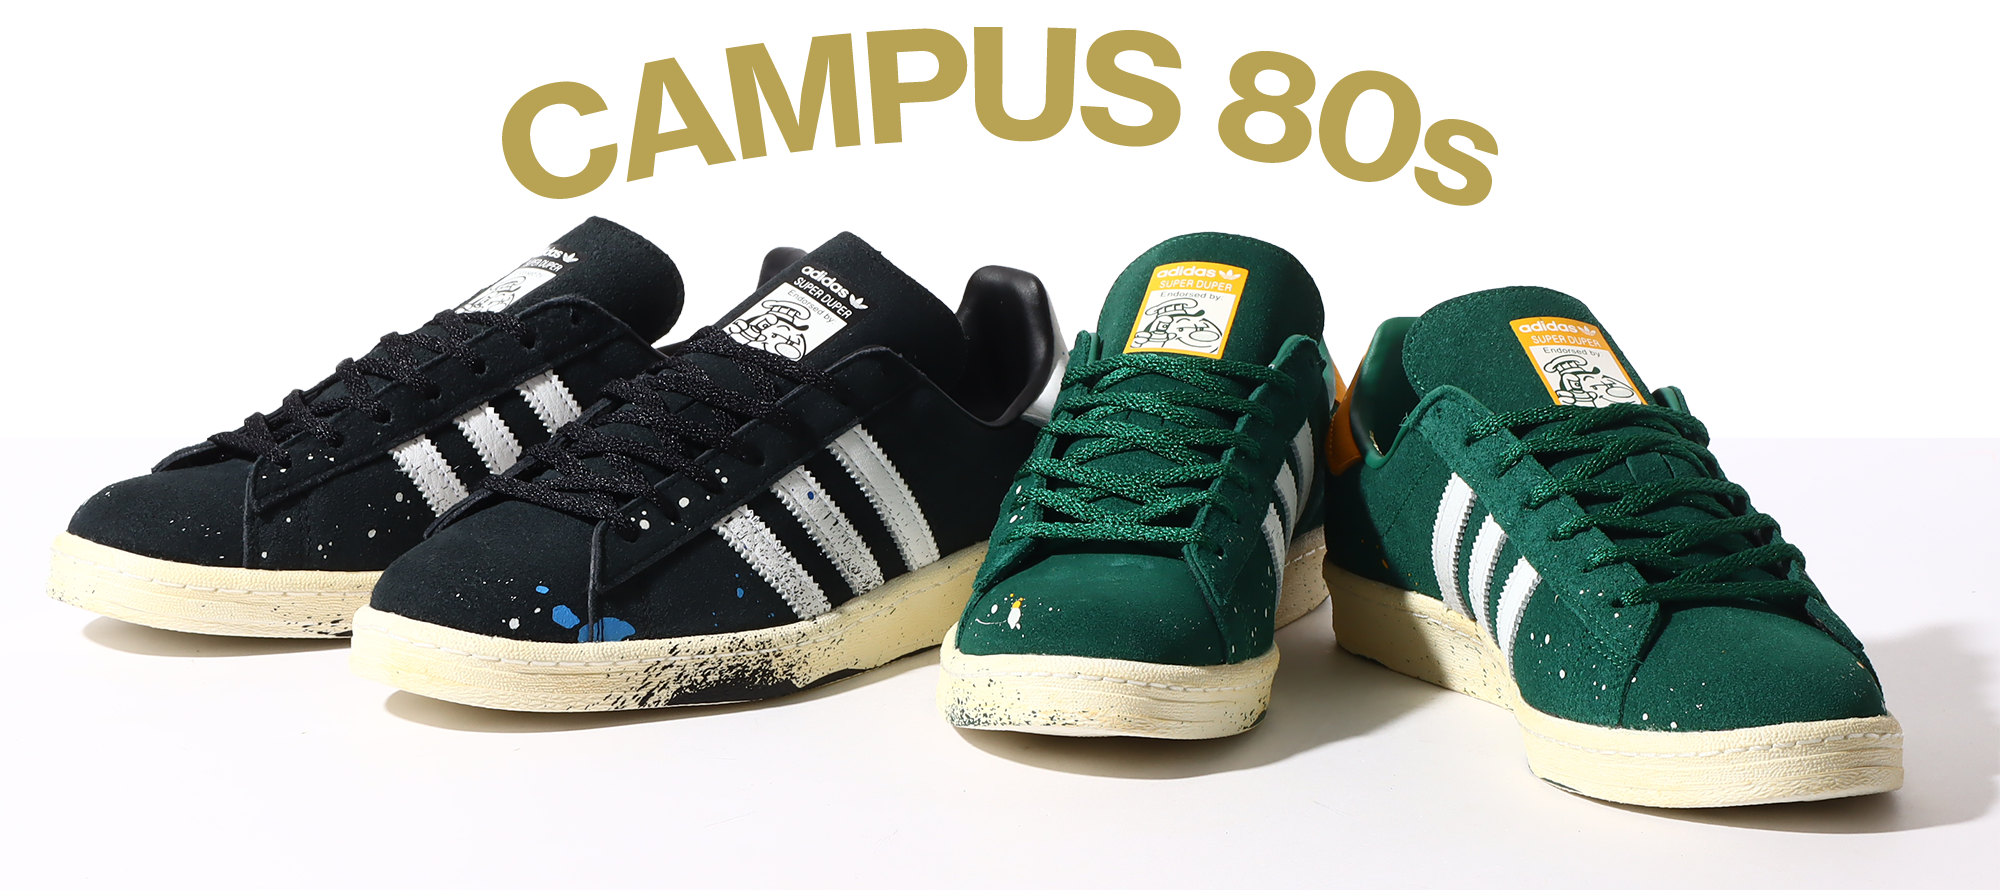 adidas Originals CAMPUS 80s COOK